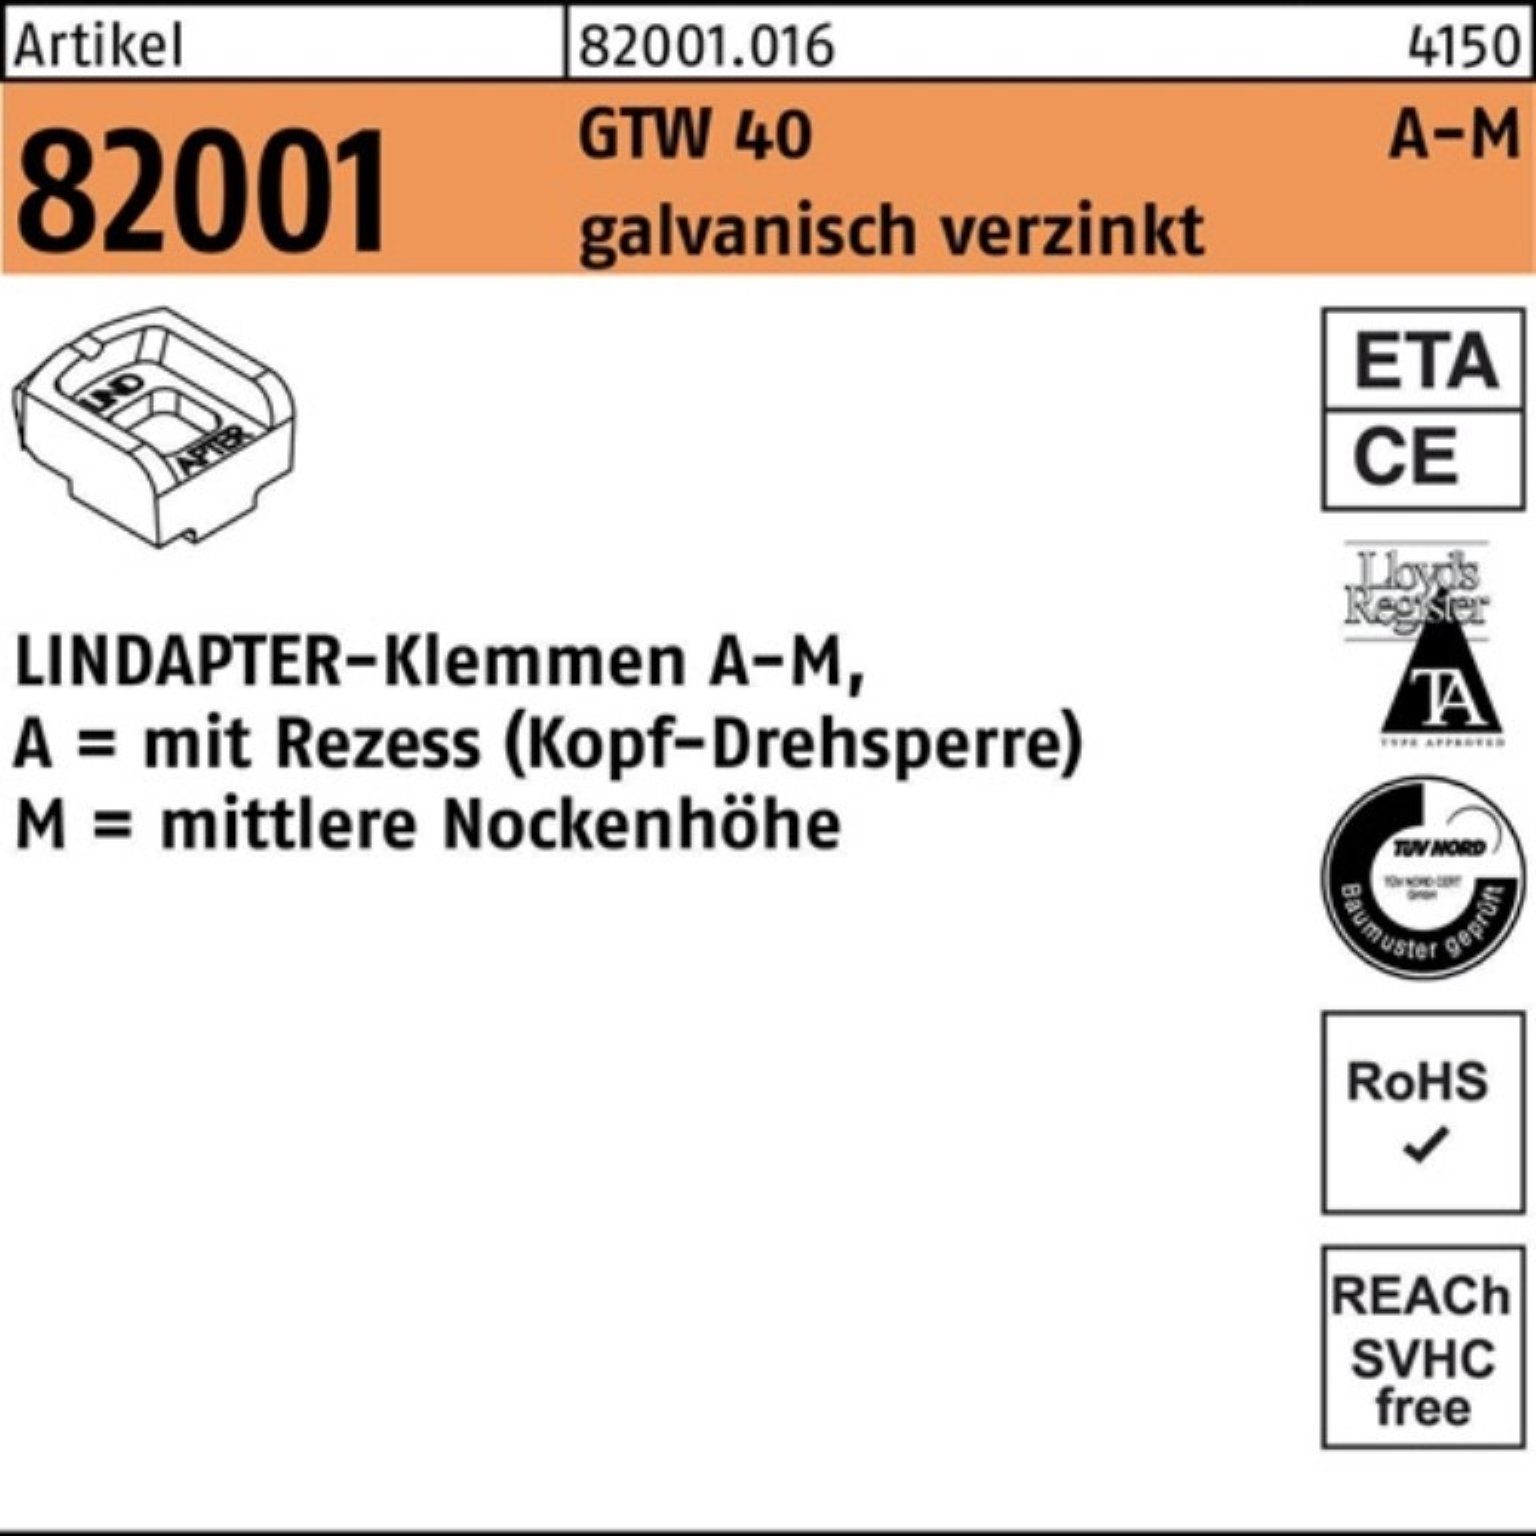 Klemmen MM Pack 1 100er galv.verz. 40 Lindapter 82001 LINDA Stück 24/12,0 R GTW Klemmen